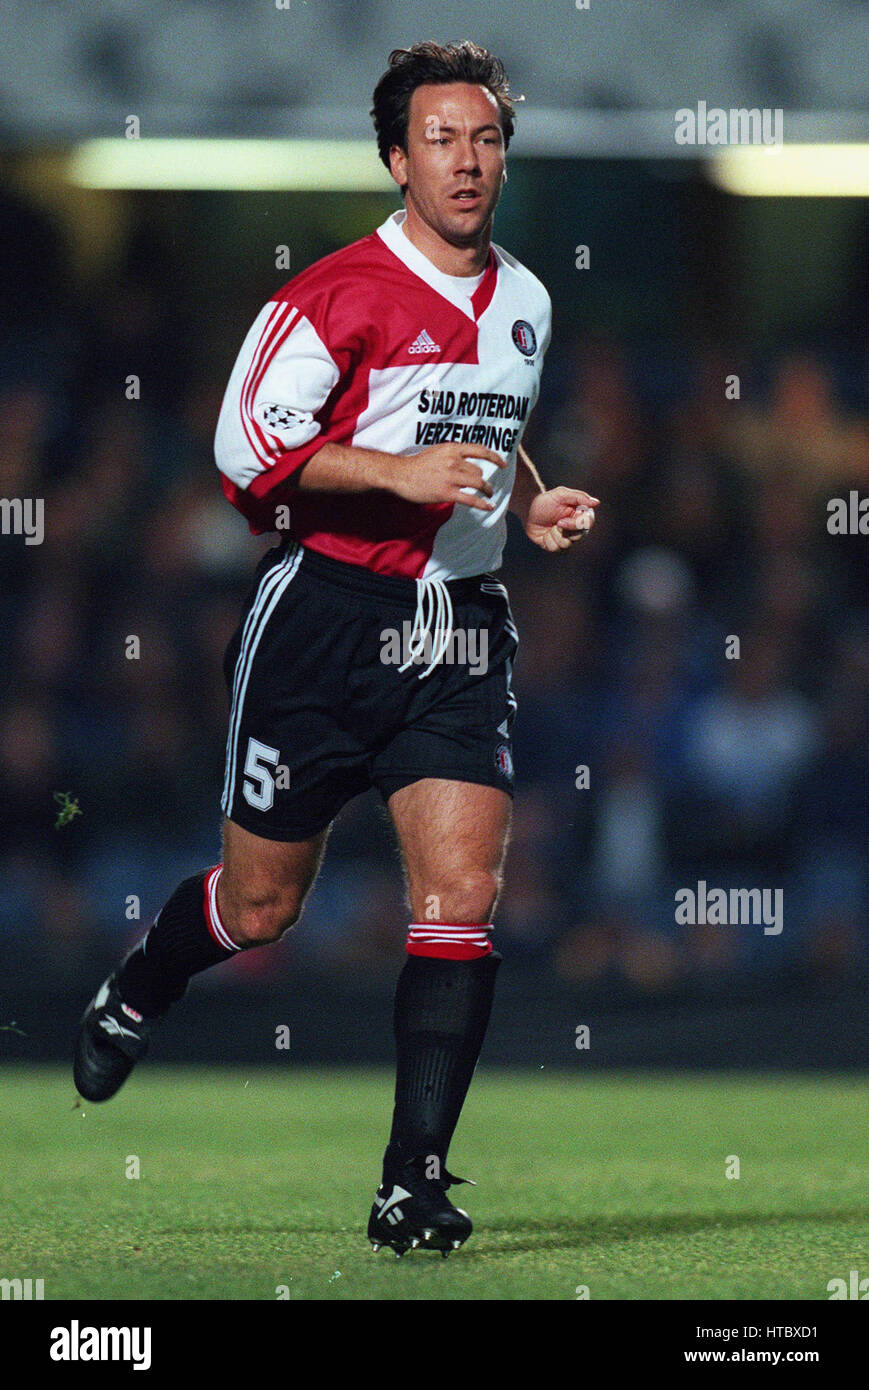 JEAN-PAUL VAN GASTEL FEYENOORD FC 24 November 1999 Stock Photo - Alamy